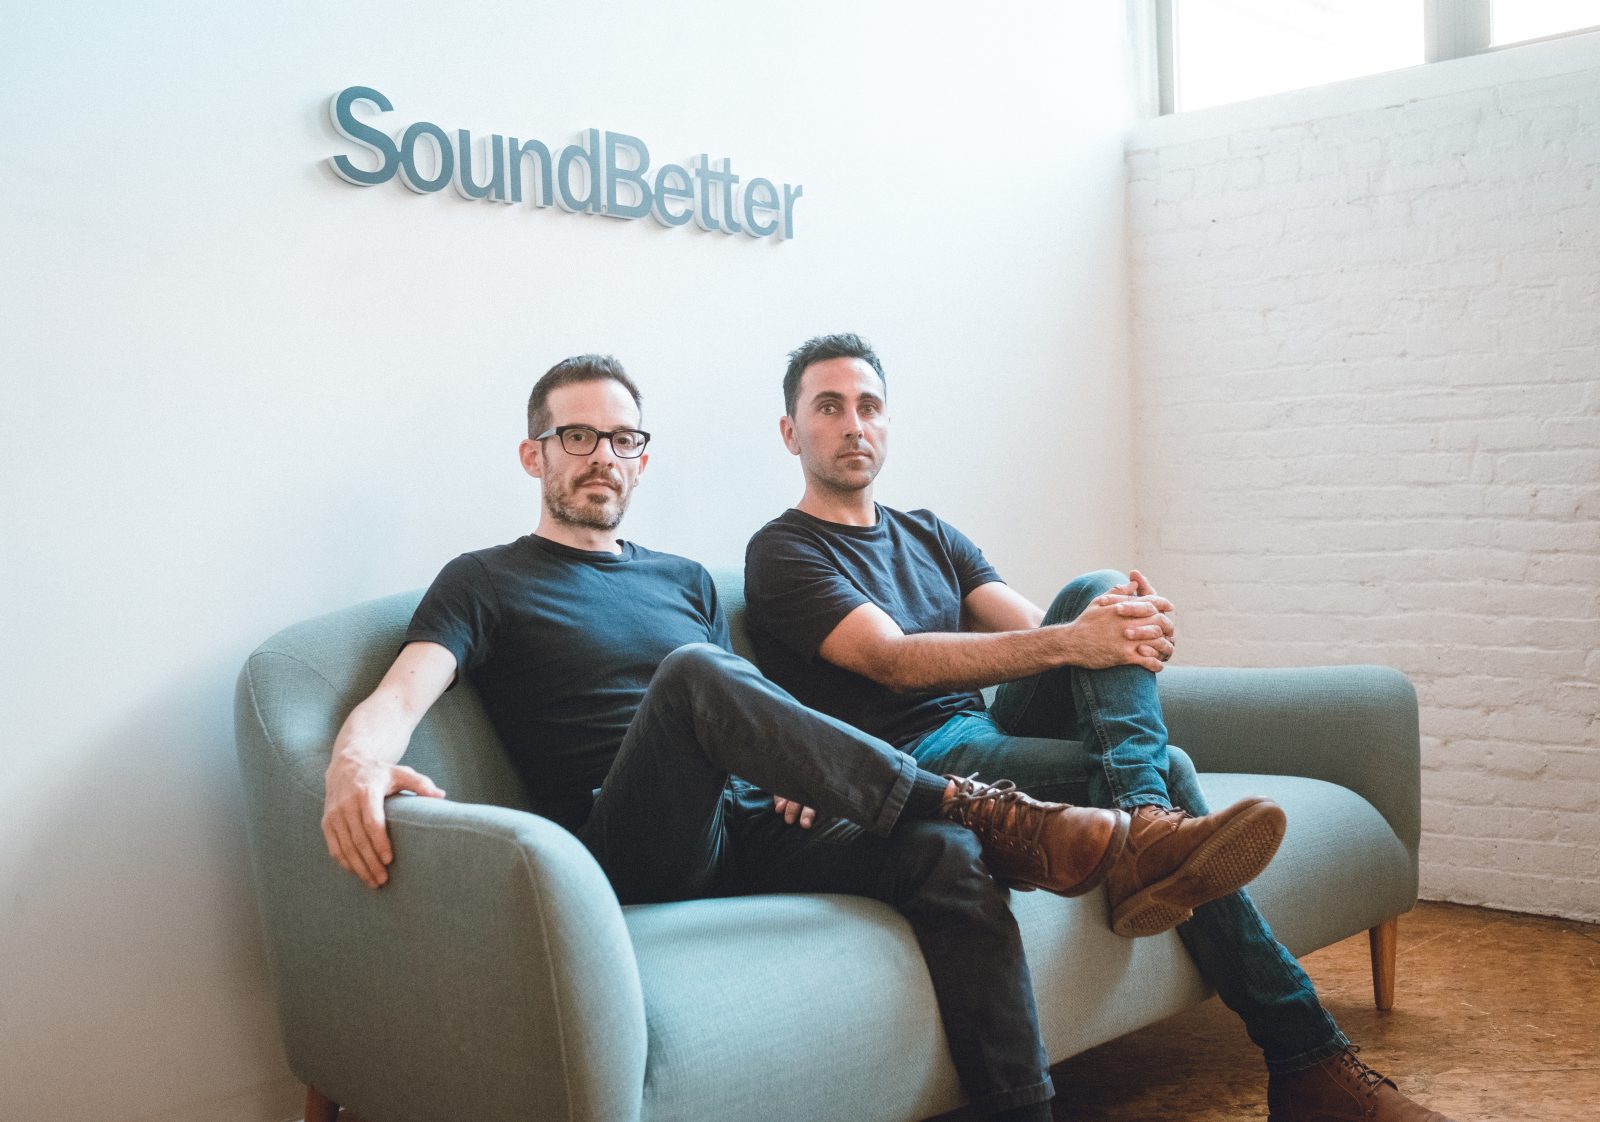 Spotify sells SoundBetter – back to SoundBetter